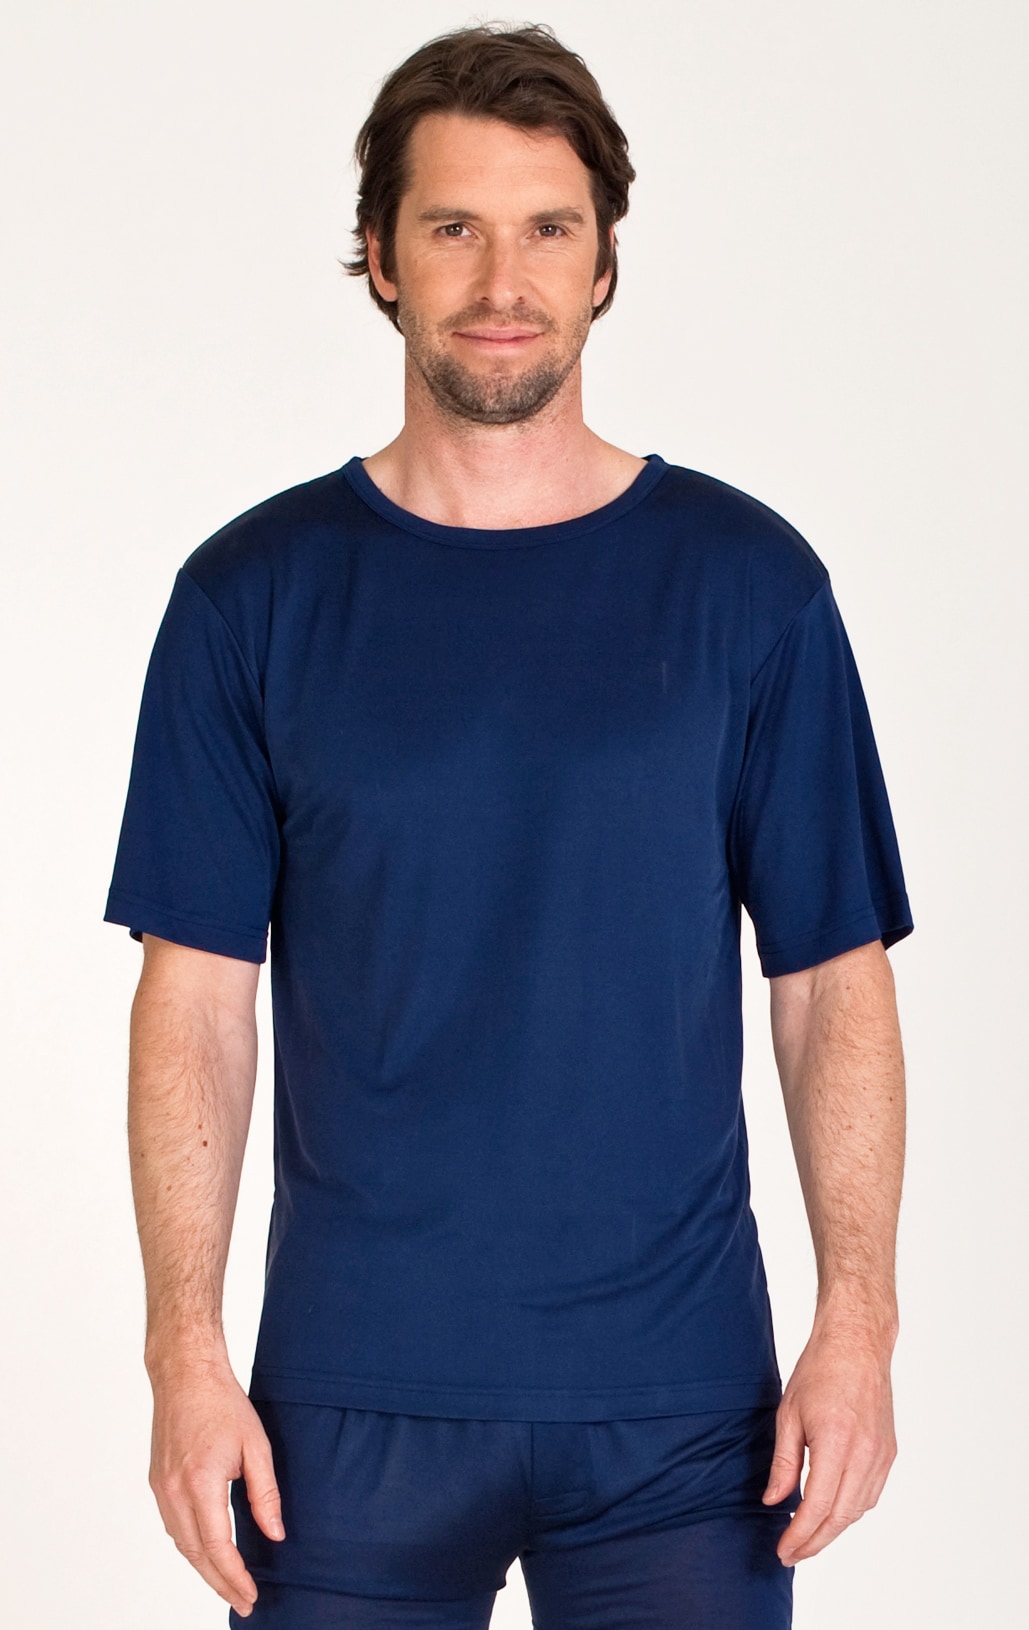 Silk t-shirt navy blue